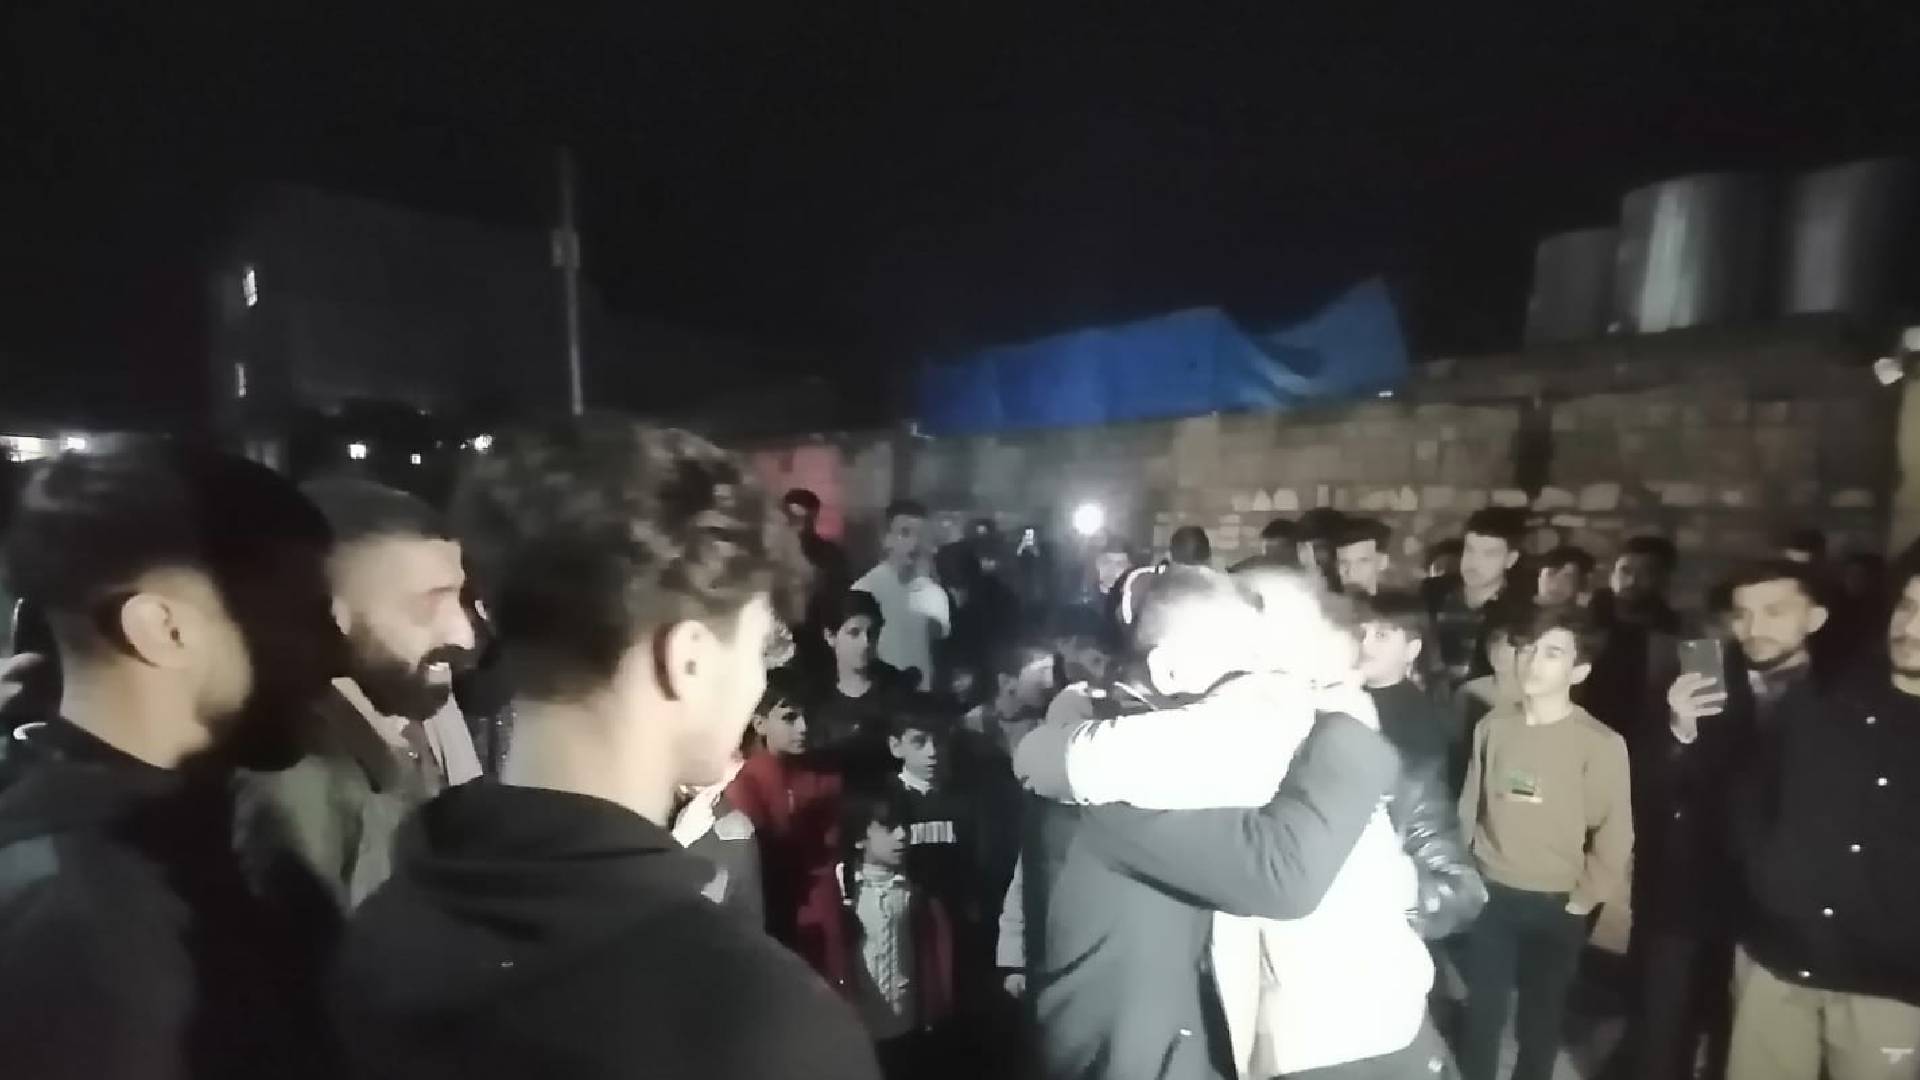 السعادة تغمر مواطني شيلادزي بعد اطلاق سراح النشطاء المدنيين 